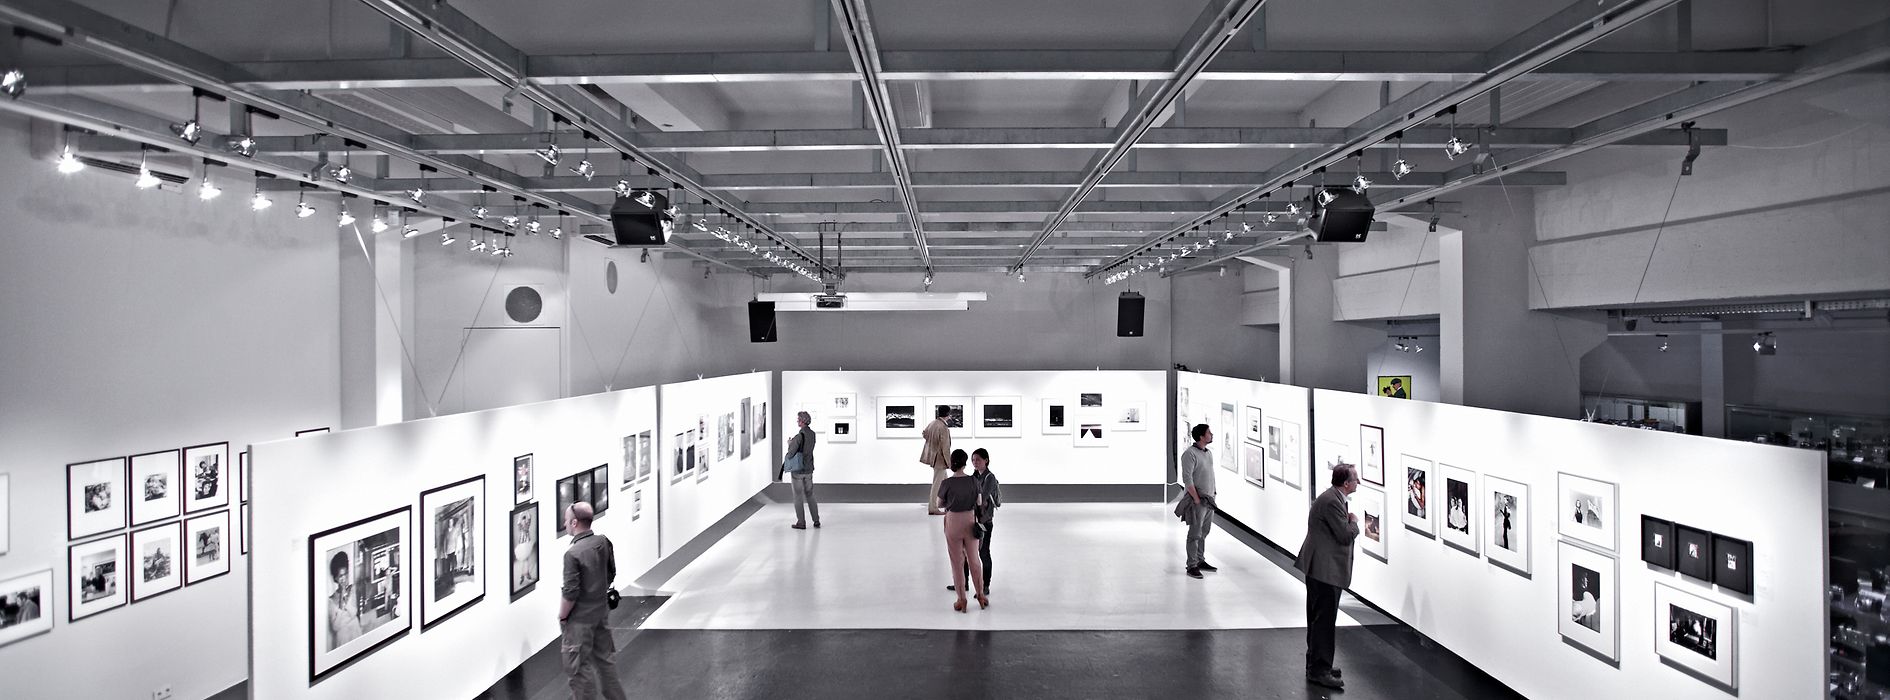 Sala principal de la galería WestLicht